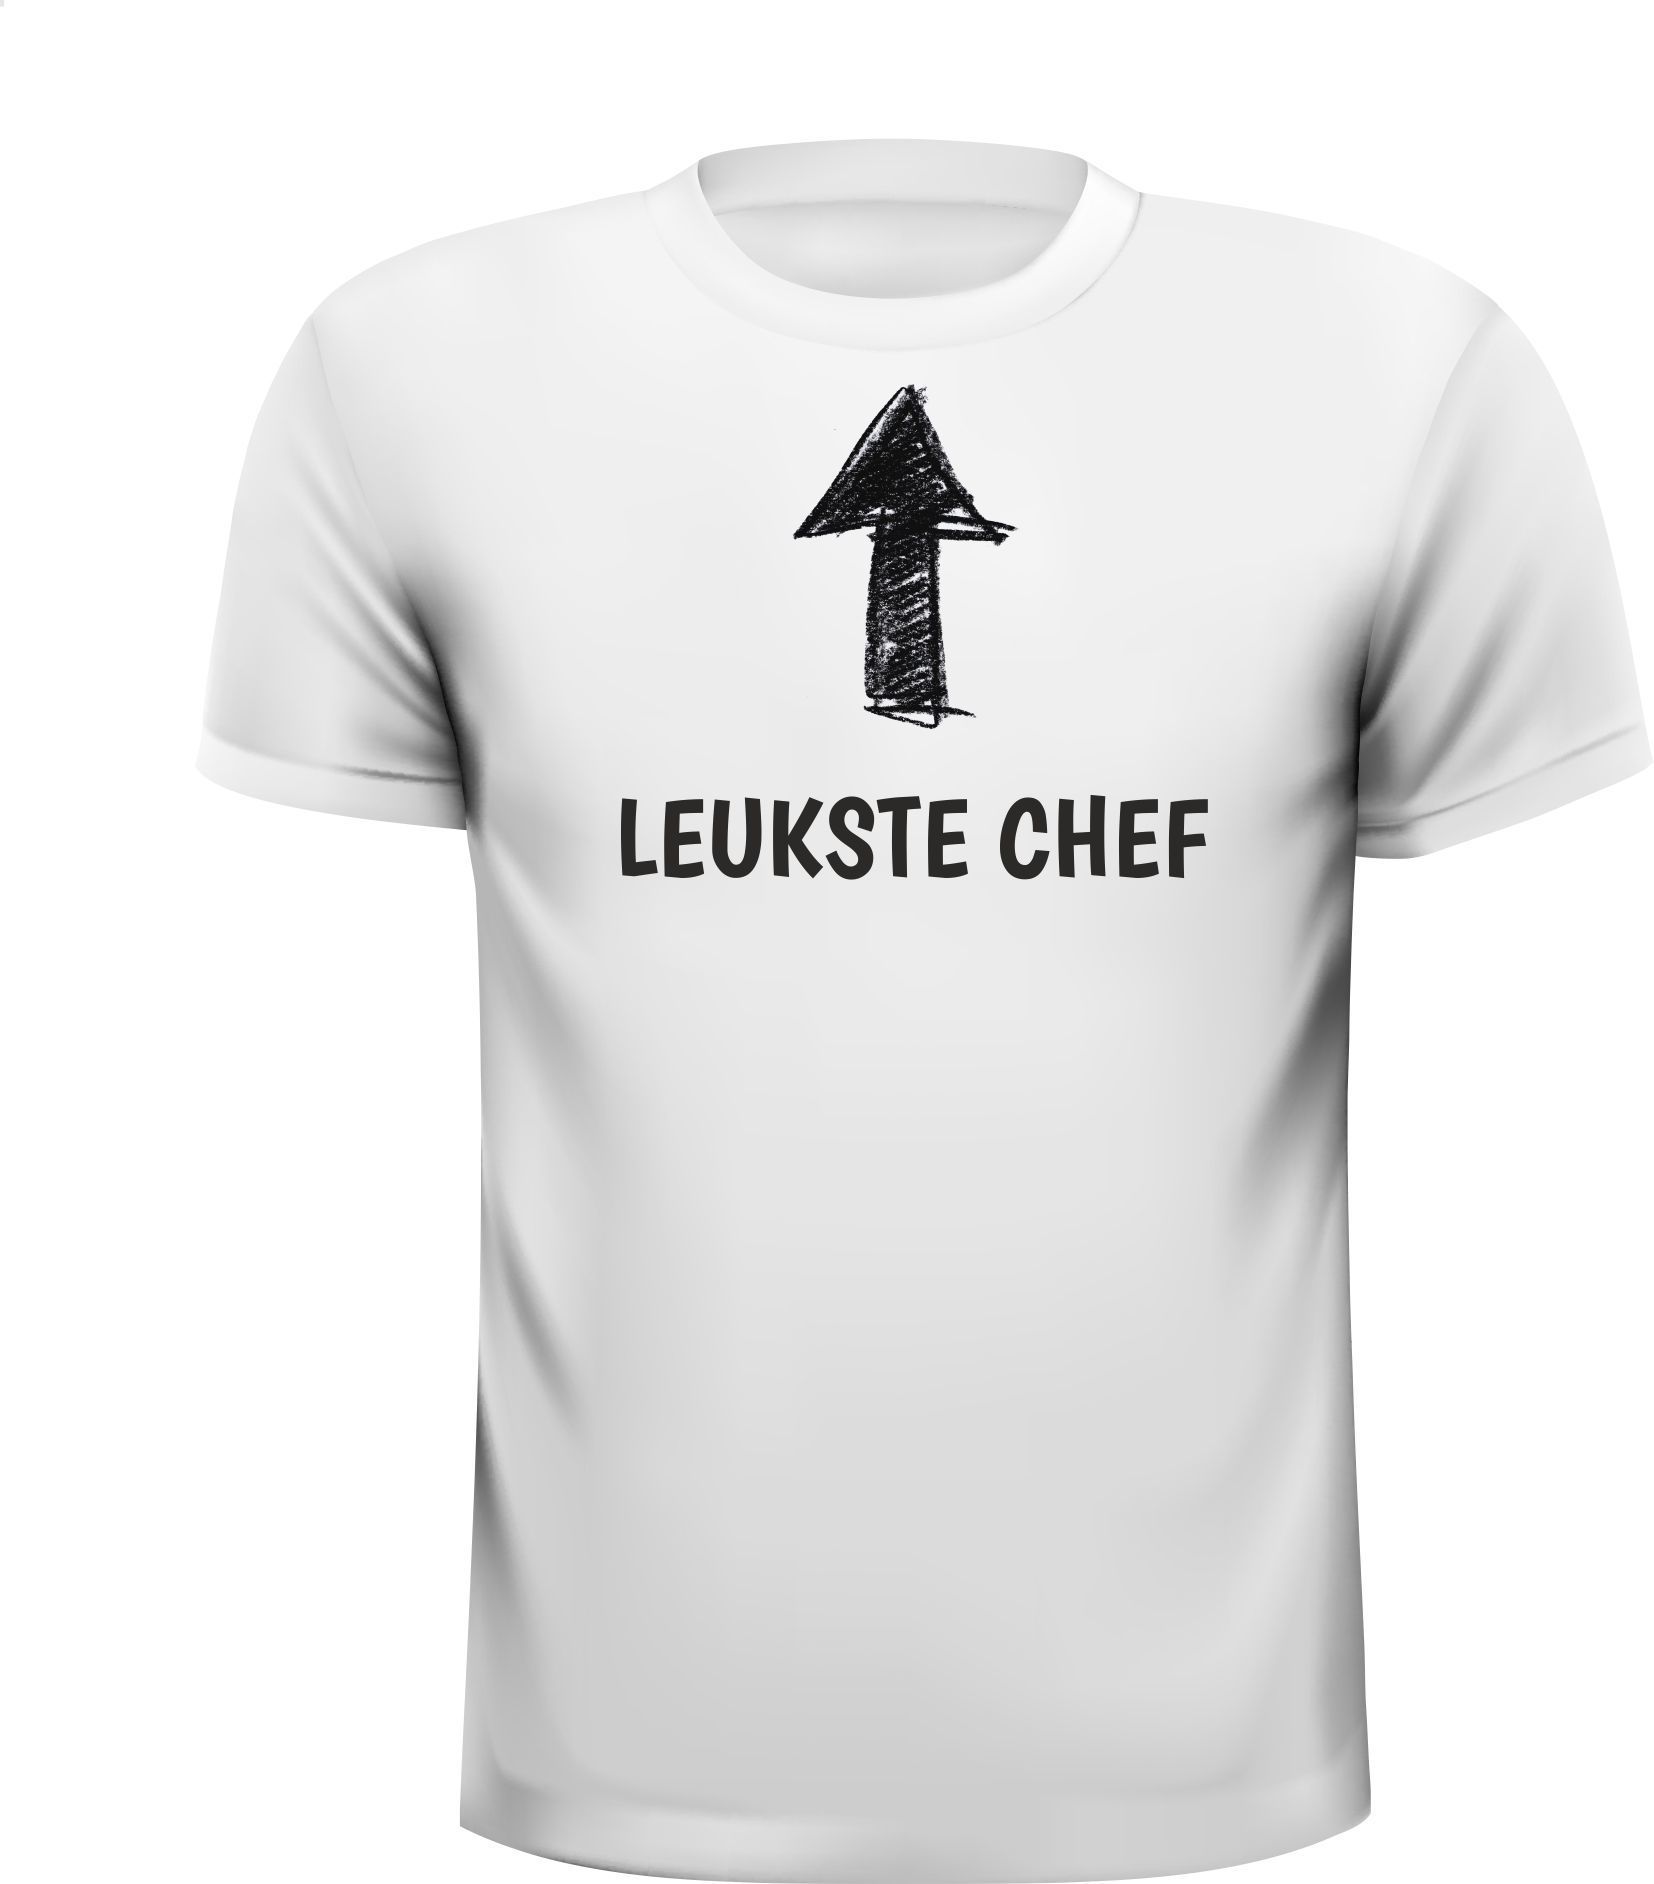 Wit T-shirt voor de leukste chef van Nederland